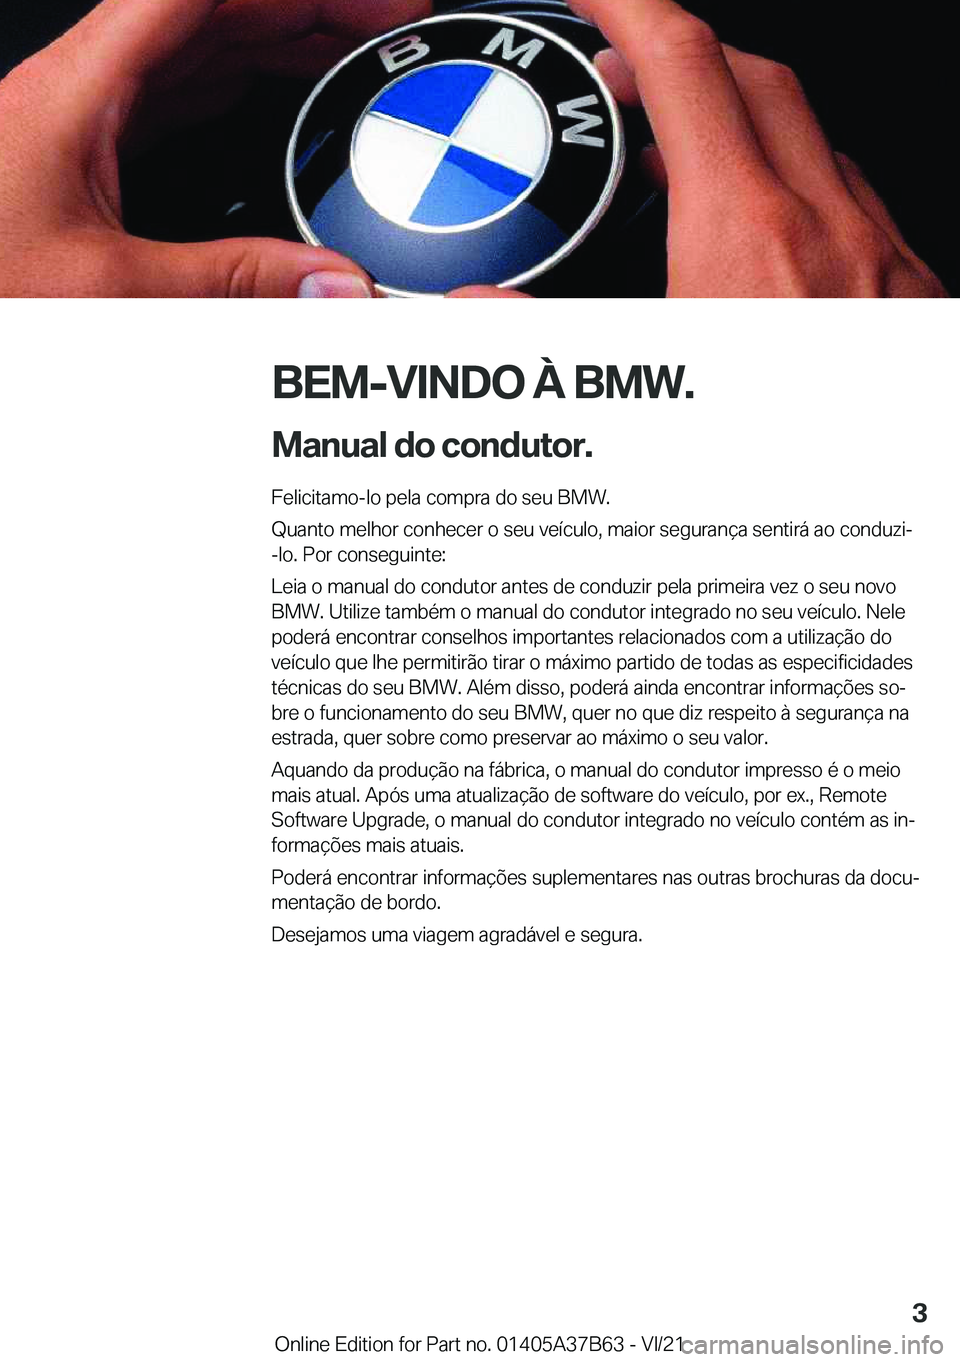 BMW M8 2022  Manual do condutor (in Portuguese) �B�E�M�-�V�I�N�D�O��À��B�M�W�.
�M�a�n�u�a�l��d�o��c�o�n�d�u�t�o�r�. �F�e�l�i�c�i�t�a�m�o�-�l�o��p�e�l�a��c�o�m�p�r�a��d�o��s�e�u��B�M�W�.
�Q�u�a�n�t�o��m�e�l�h�o�r��c�o�n�h�e�c�e�r��o��s